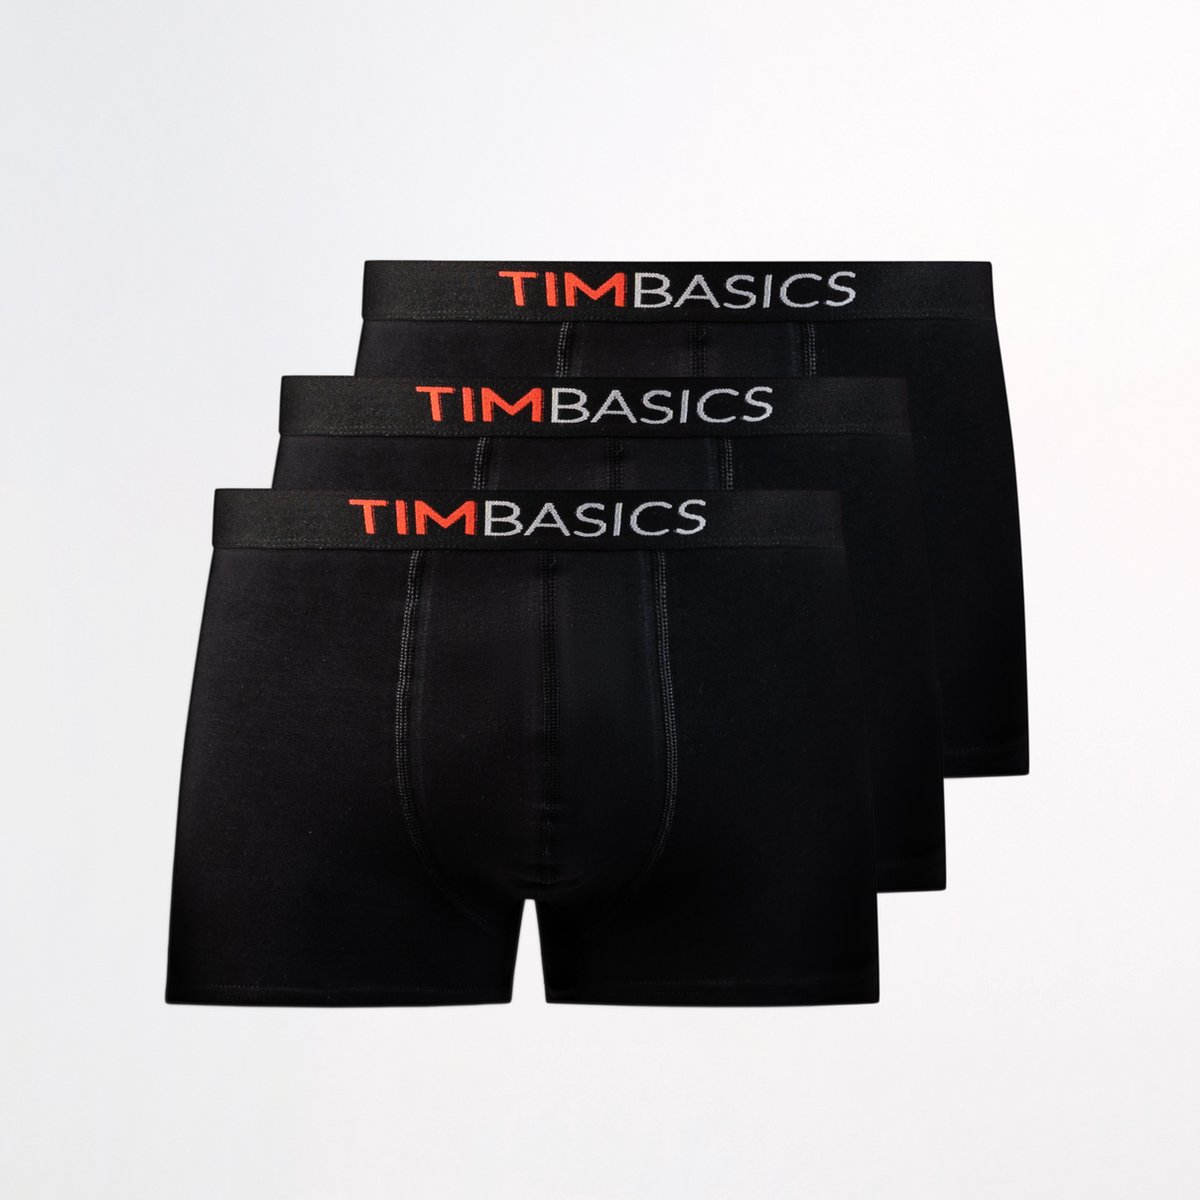 TimBasics - Heren boxershorts 3 pack - Zwart – XXL - Heren ondergoed